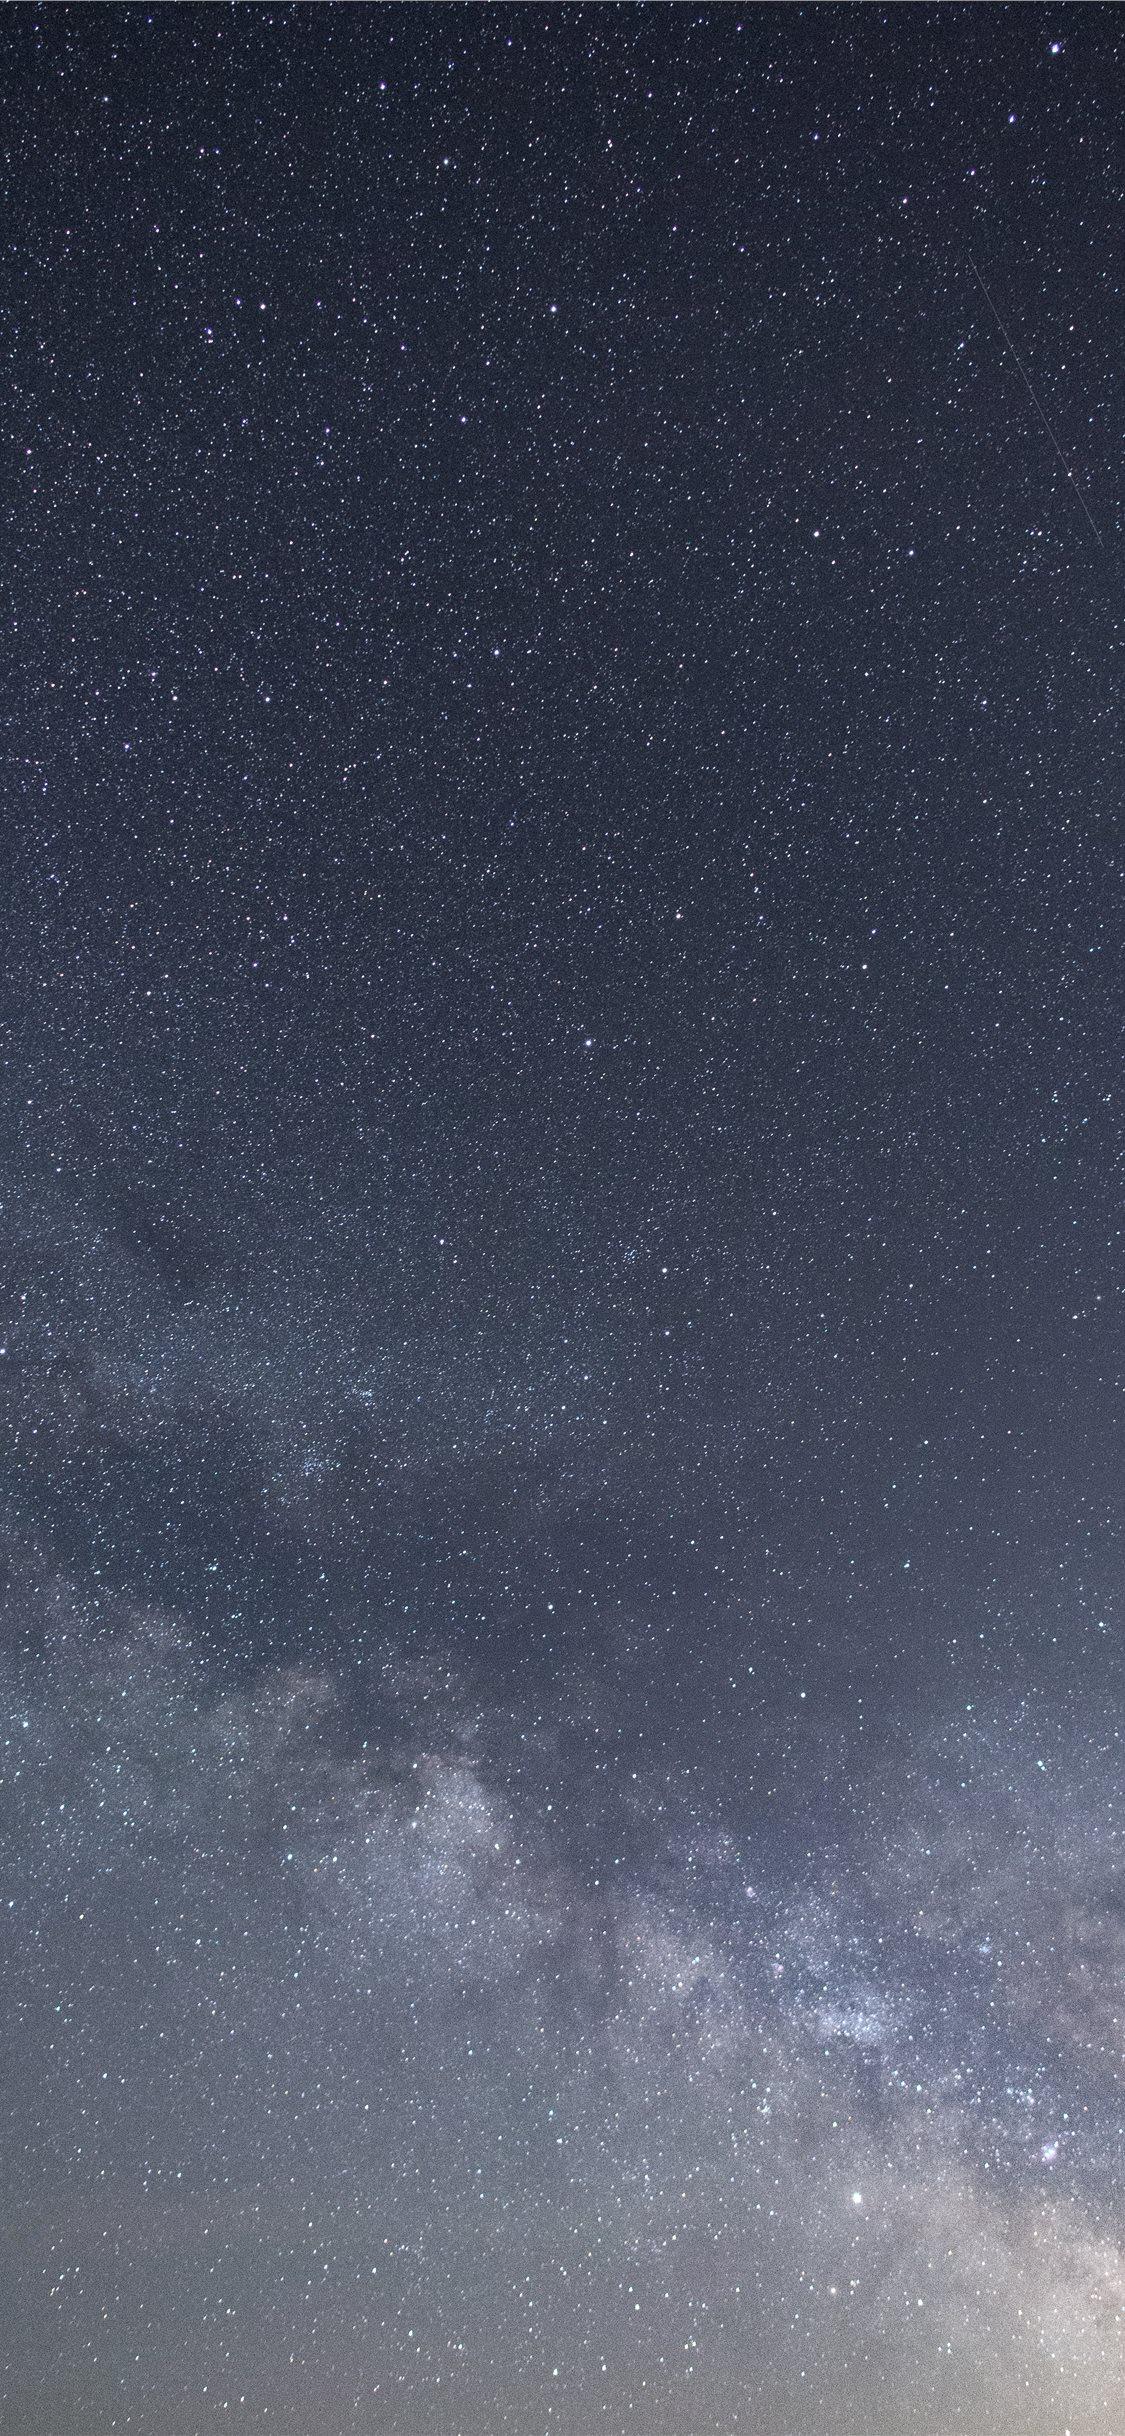 Milky Way Portrait iPhone X Wallpaper Free Download